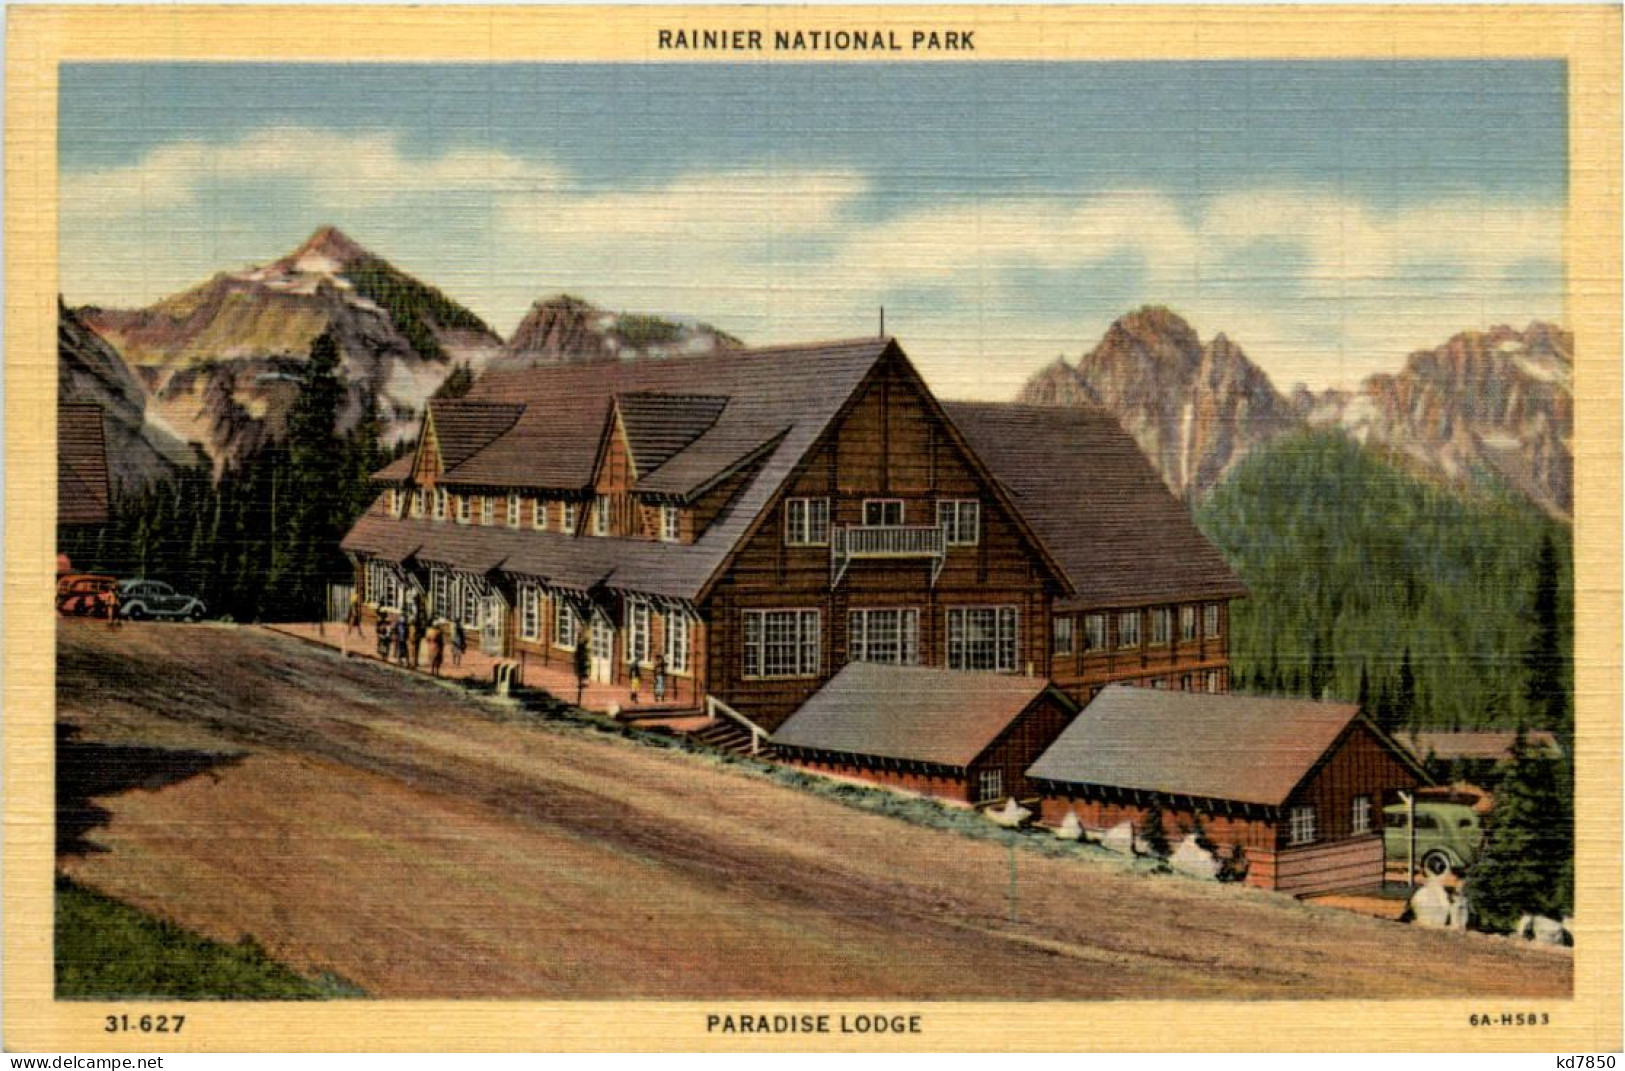 Rainier National Park - USA National Parks